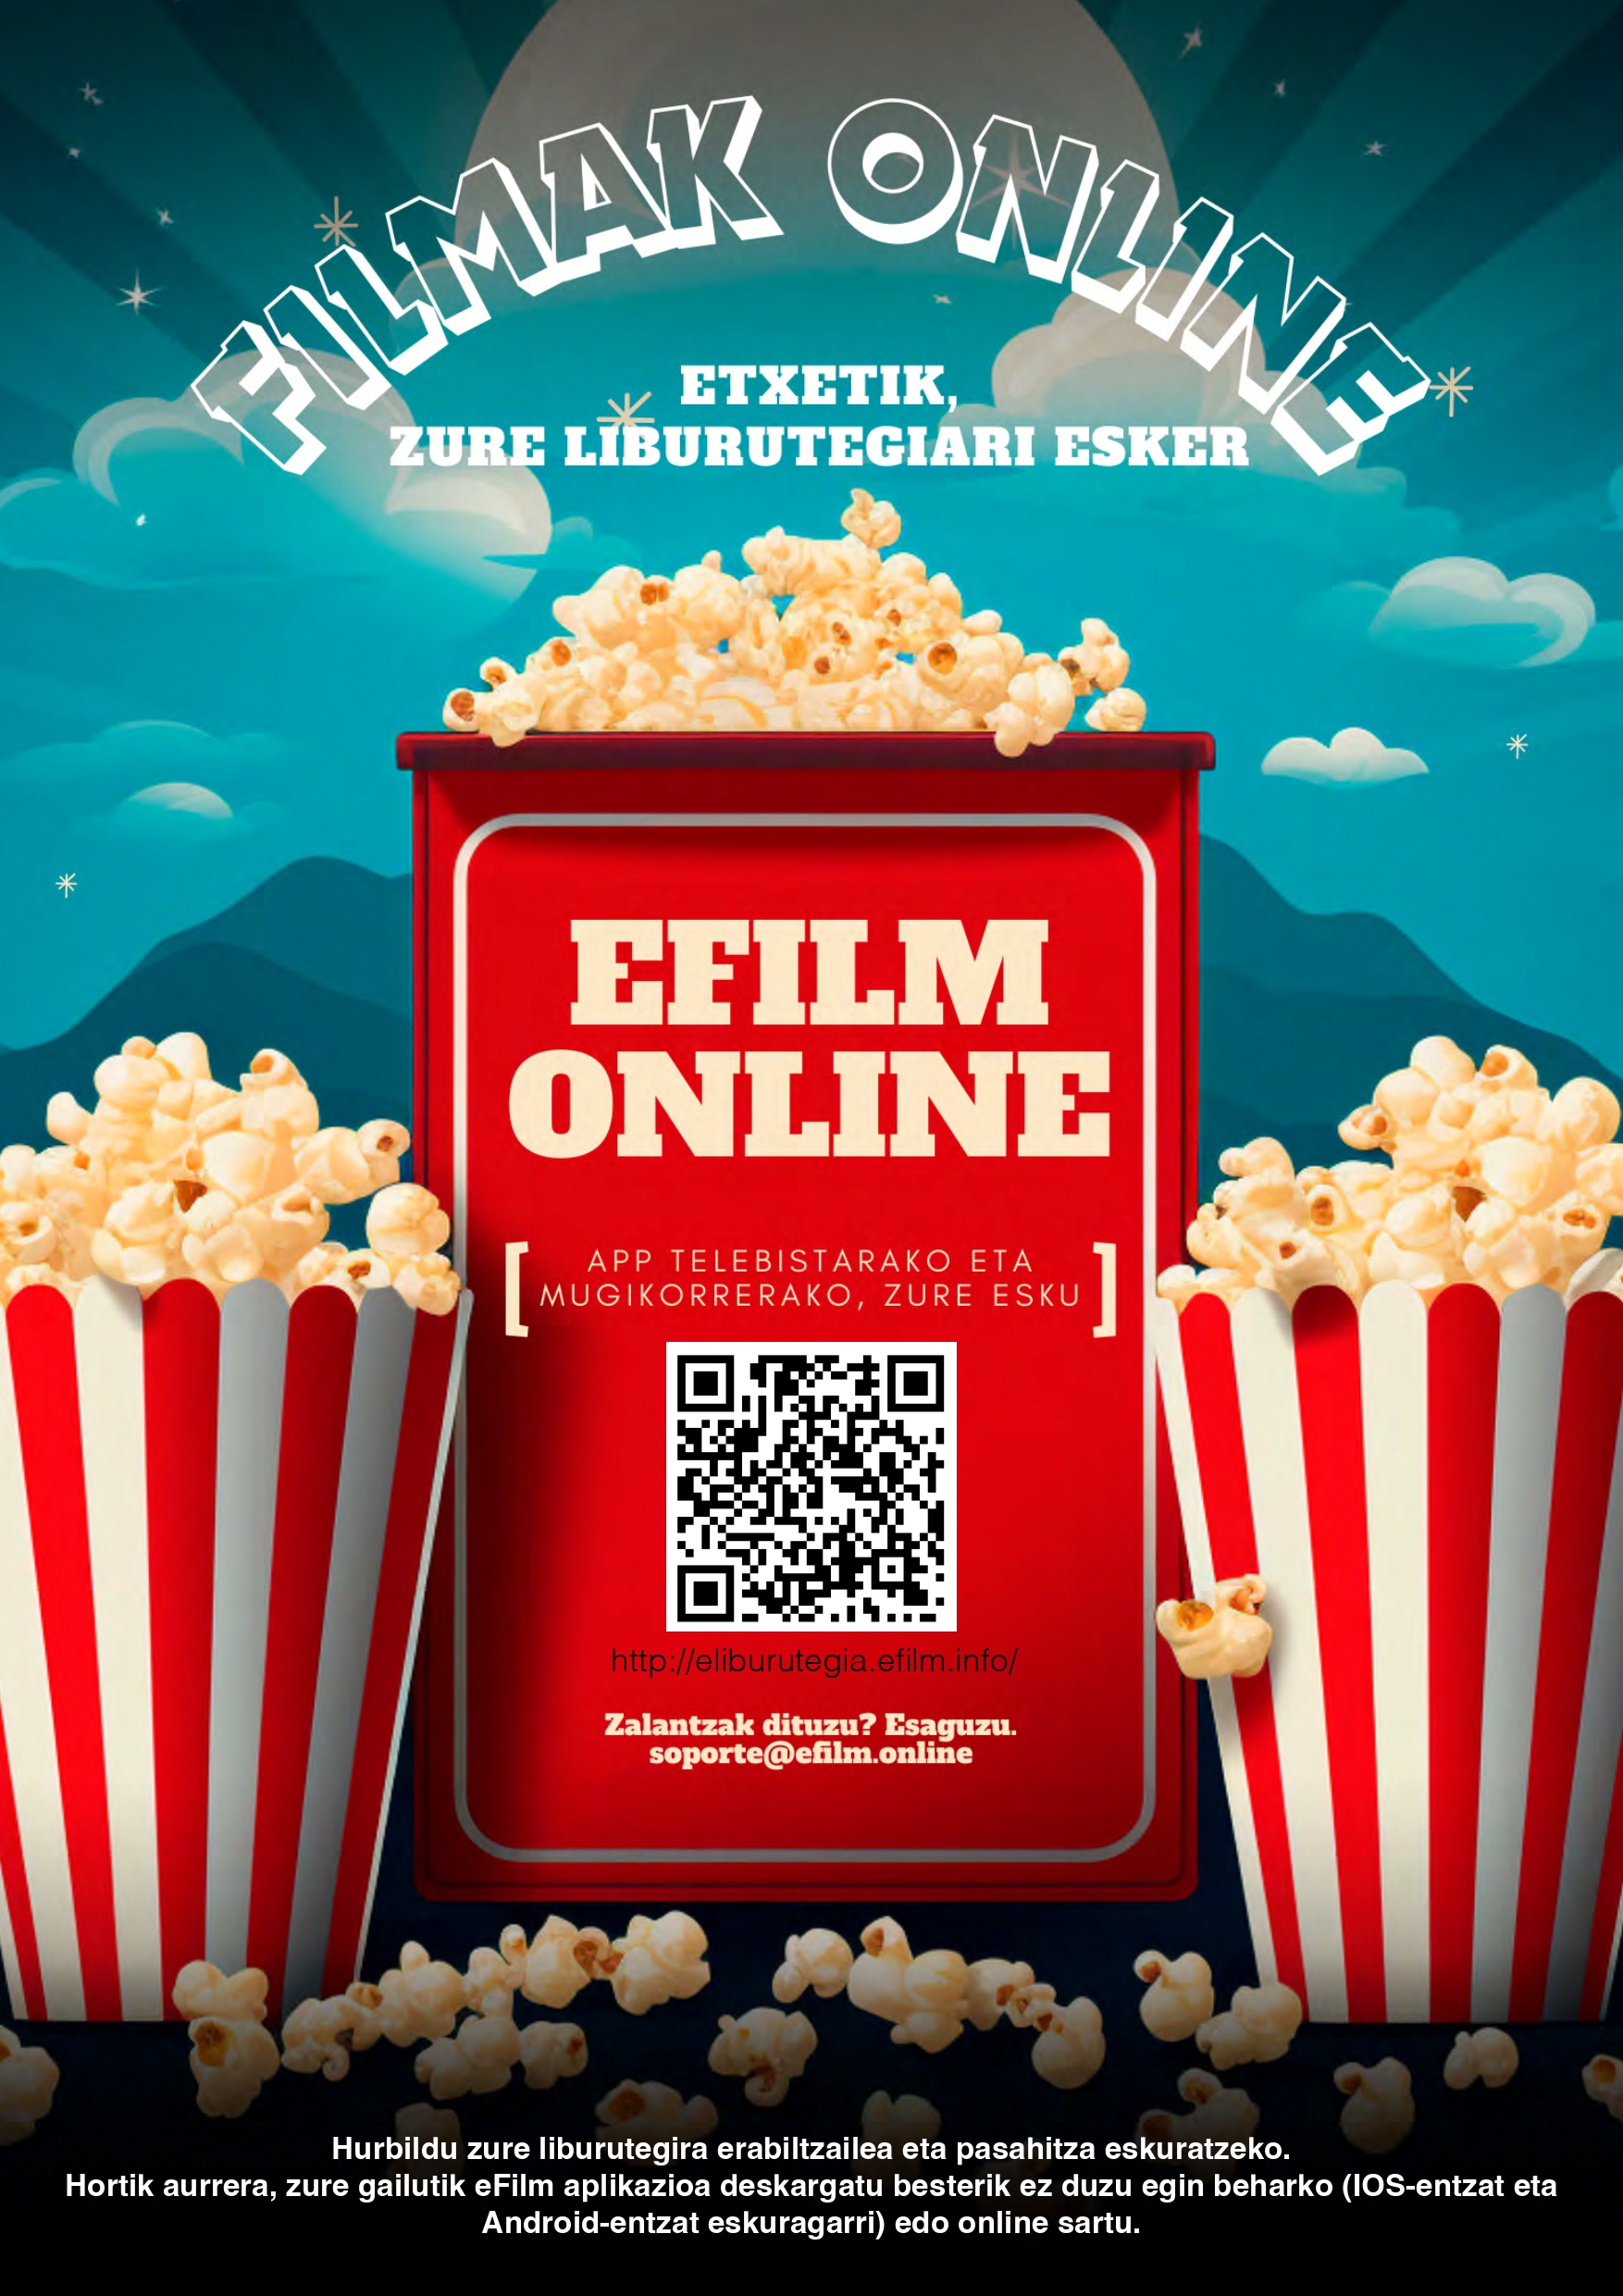 Servicio gratuito para ver películas online: eFilm